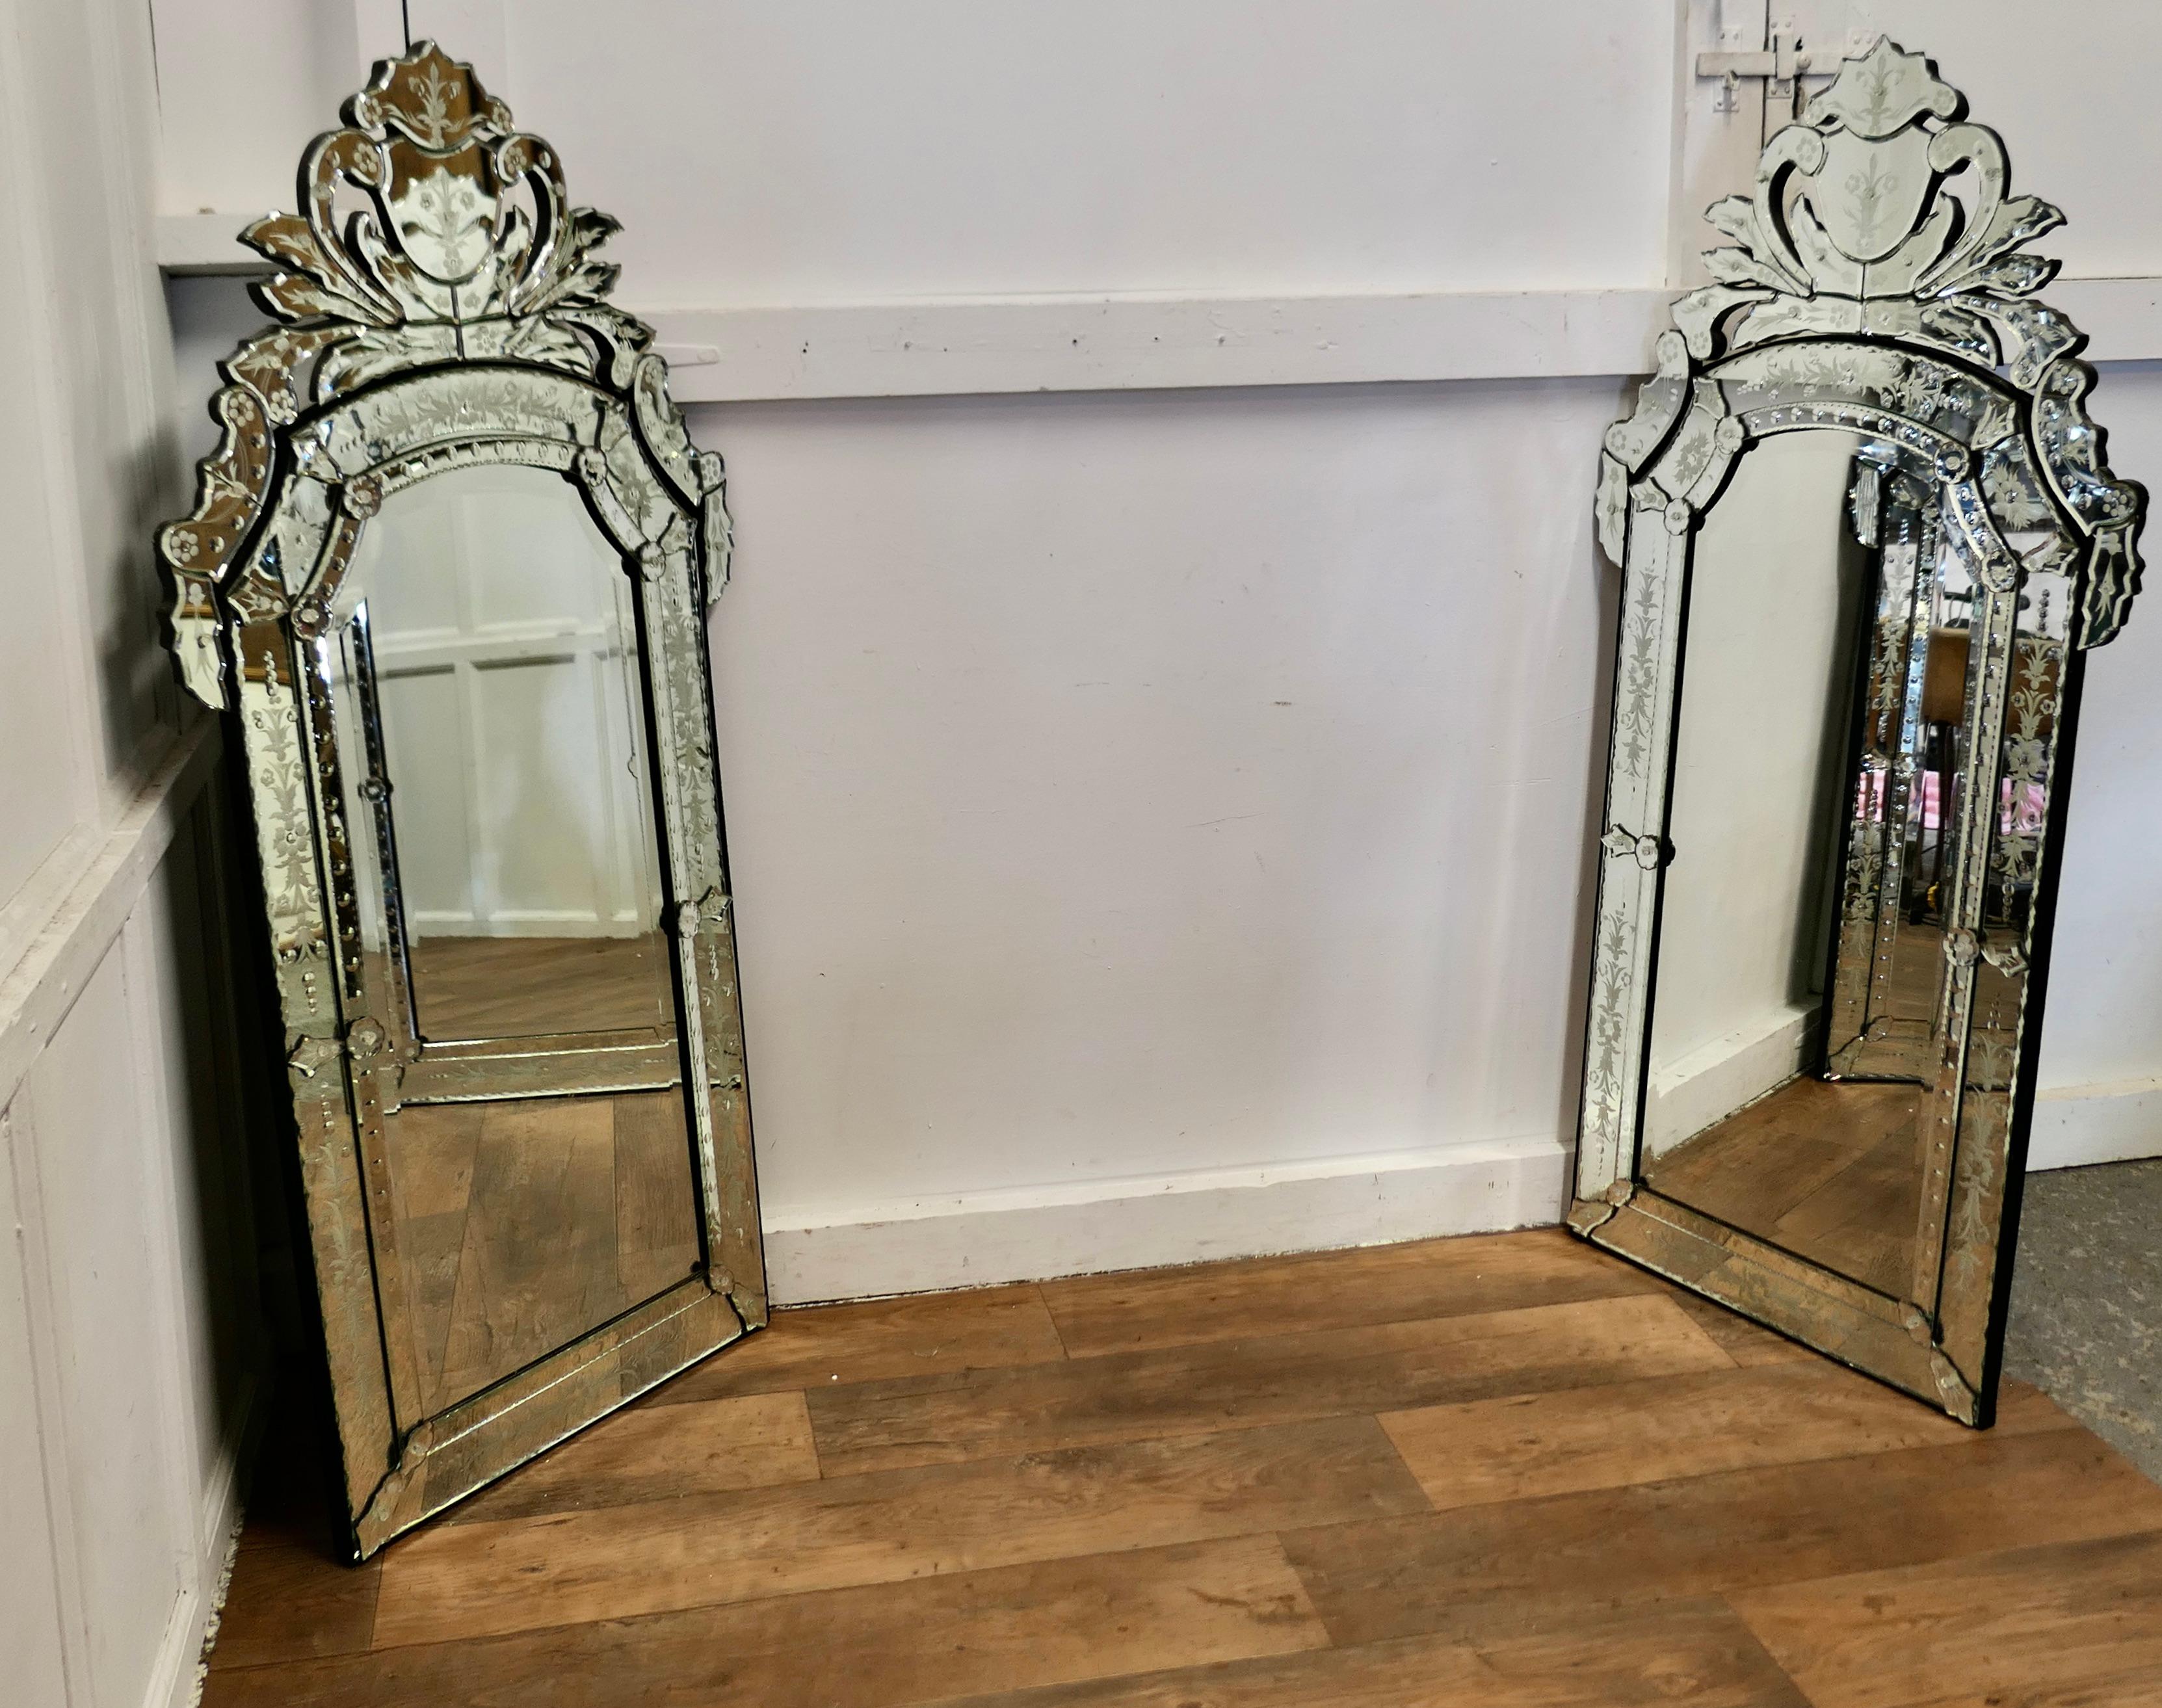 Ein hervorragendes Paar großer venezianischer Pier-Spiegel

Diese sind  Sie sind beide in sehr gutem Zustand und mit aufwändigen, hohen, geätzten Gesimsen versehen. Sie haben außerdem breite, geätzte Bordüren, die den zentralen Spiegel umgeben.
Es